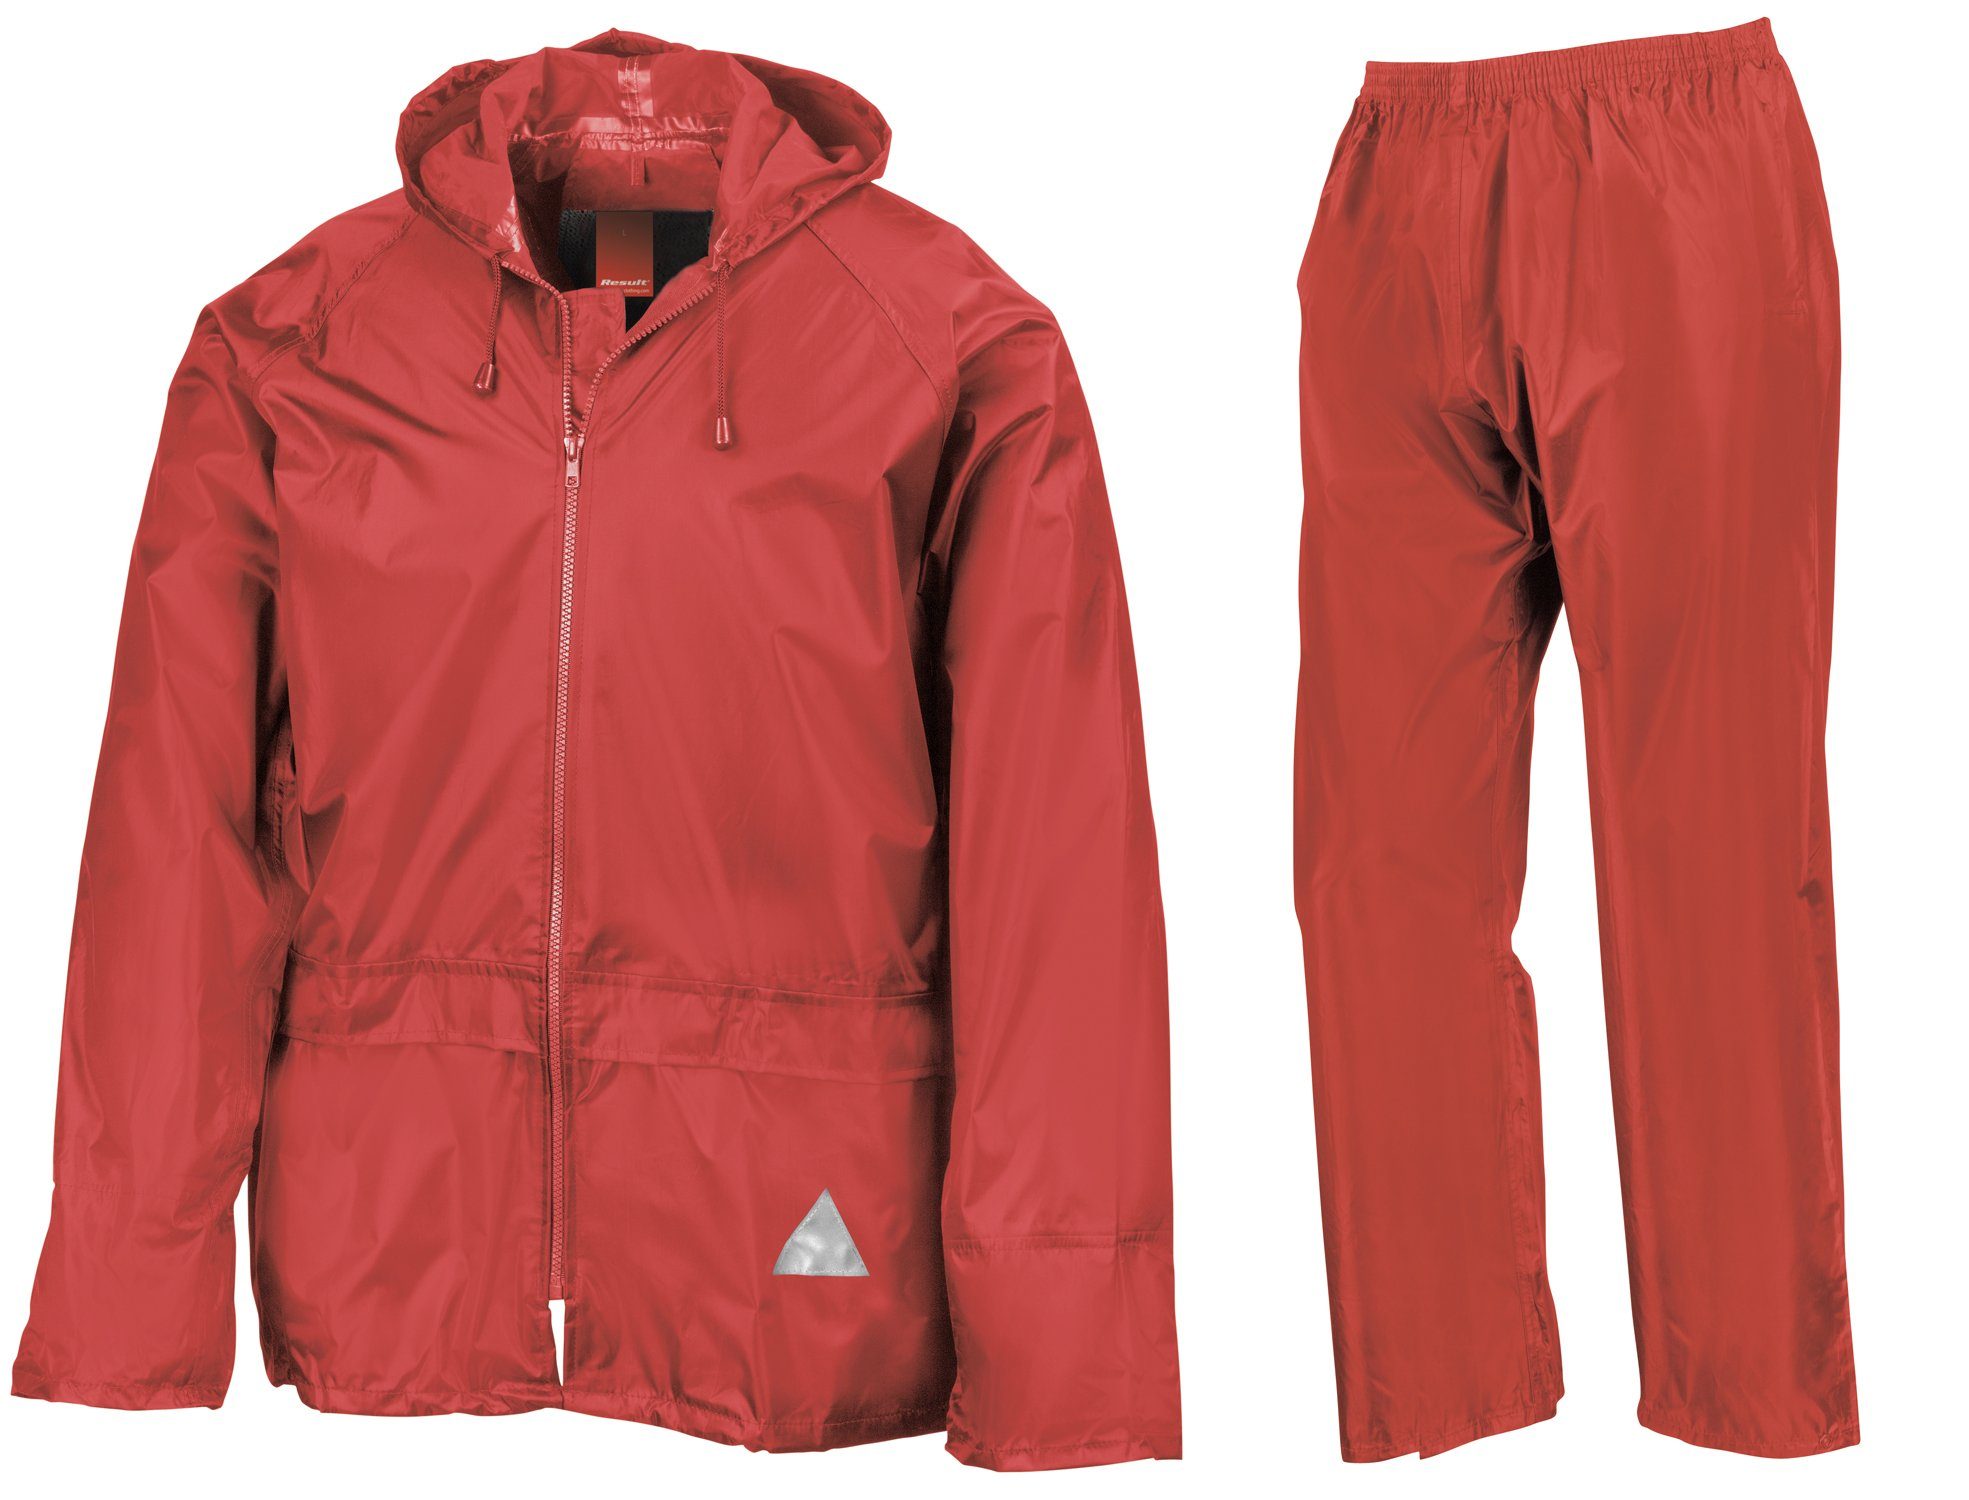 FaS95 und Result Hose Anzug Jacke wasserdicht Set RED Regenanzug Regen